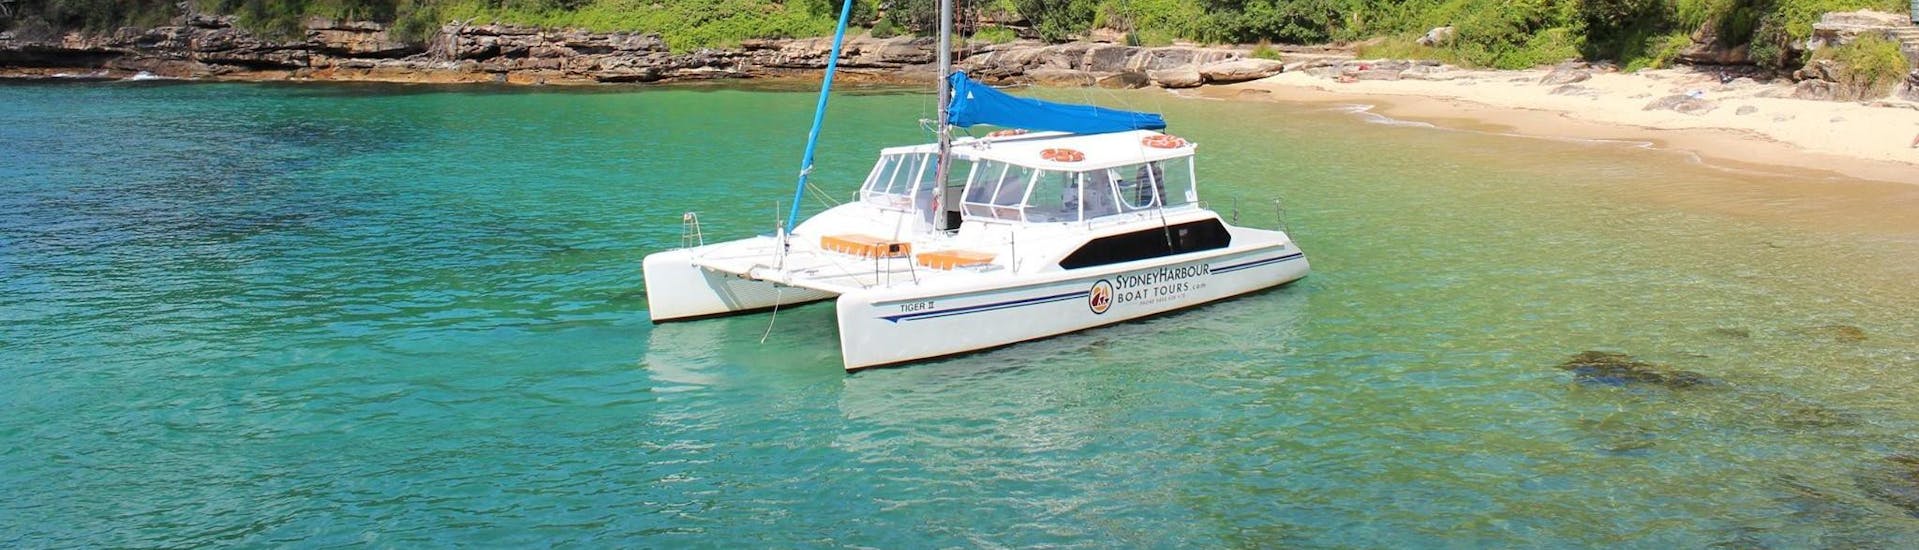 private-sydney-boat-tour-sydney-harbour-boat-tours